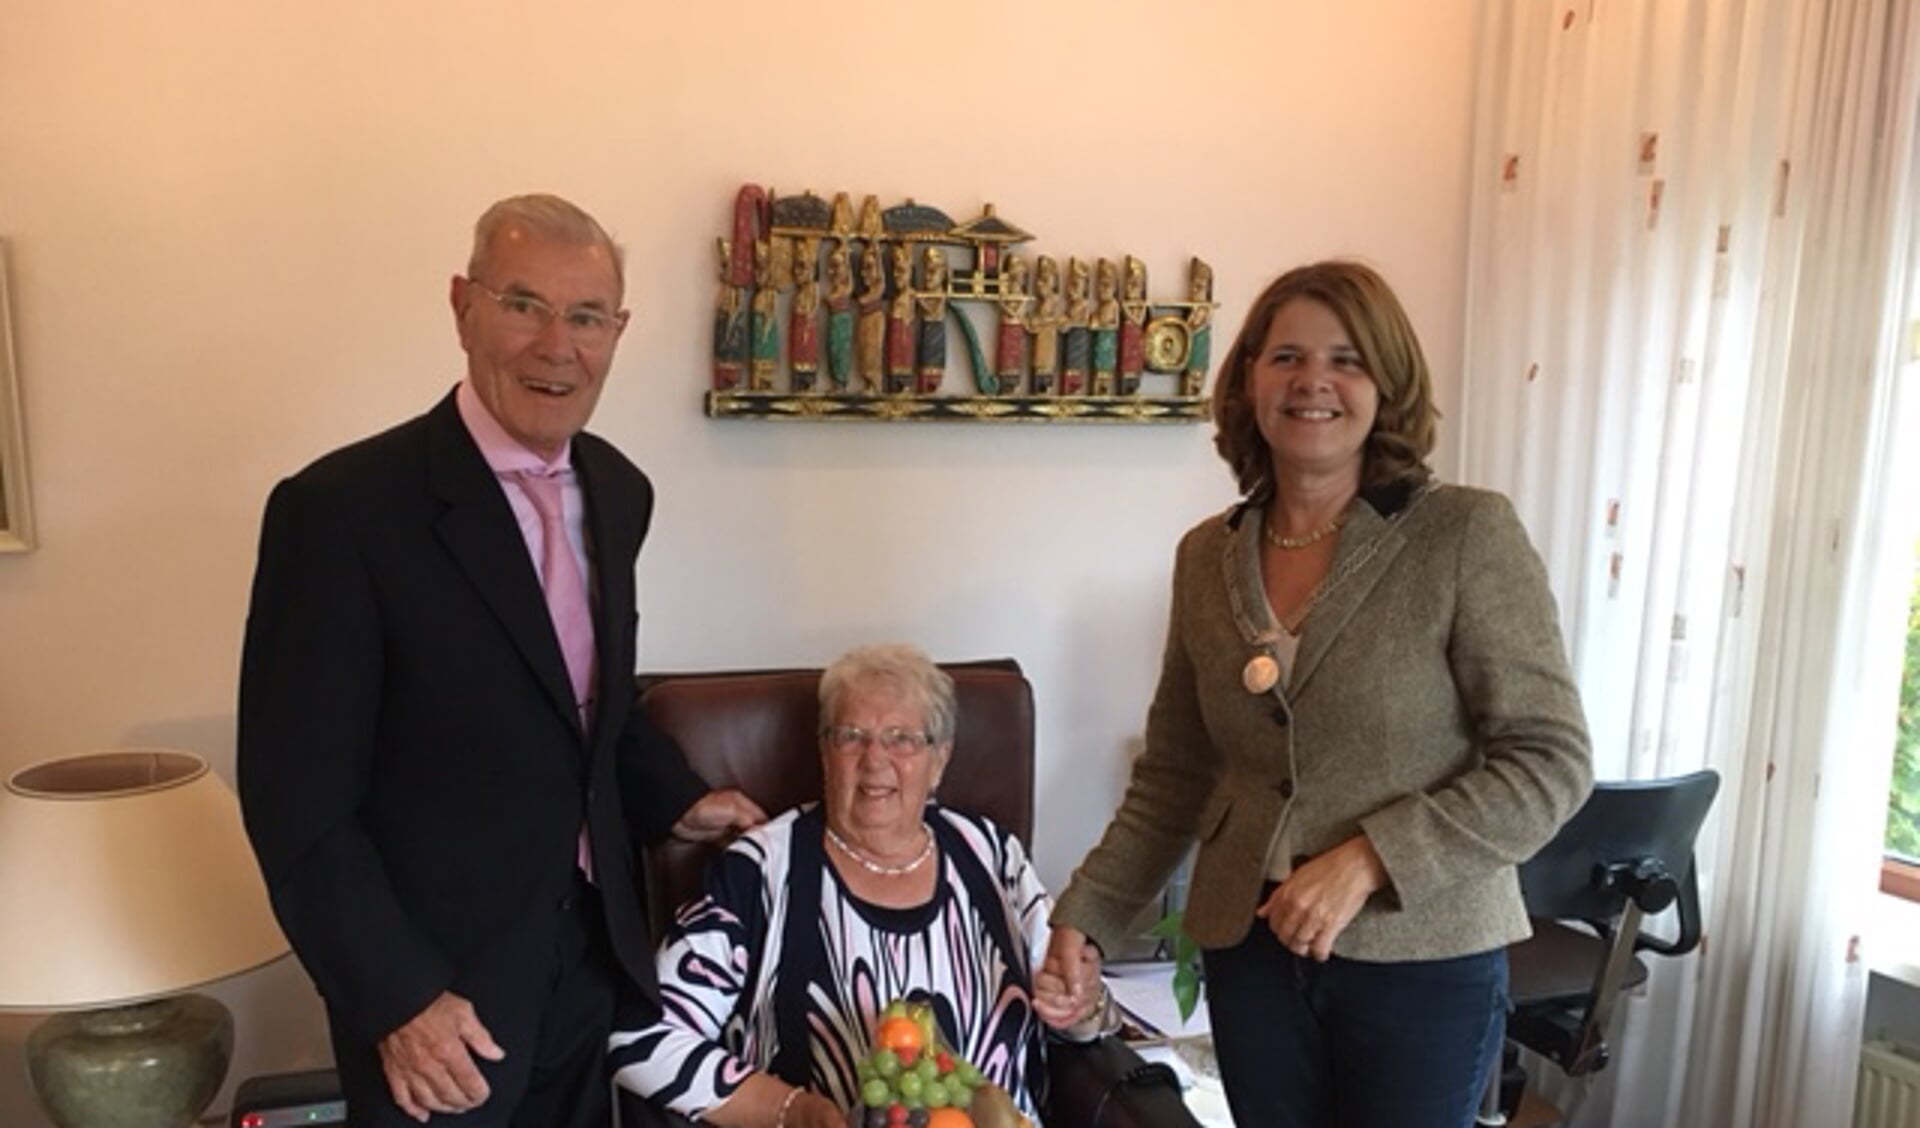 Op 13 oktober waren de heer en mevrouw Van Paassen 60 jaar getrouwd. Burgemeester Van Bijsterveldt ging bij hen op bezoek om hen met dit jubileum te feliciteren.